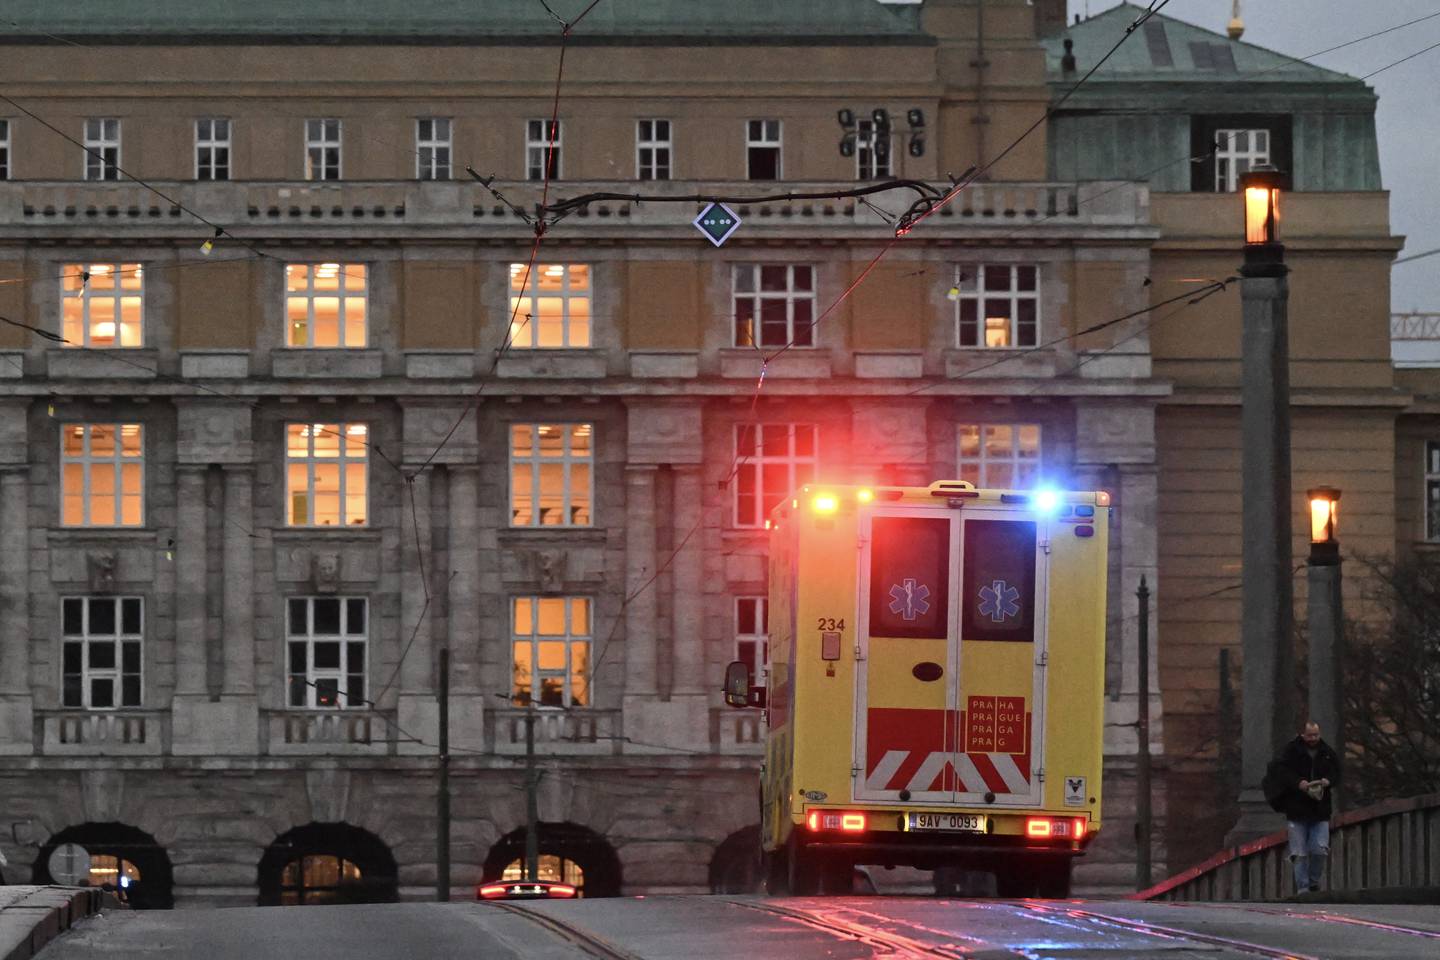 La policía checa acordonó la zona del tiroteo en la Universidad y pidió a los residentes cercanos que permanecieran en sus hogares. Se instó a profesores y estudiantes de la facultad a resguardarse mientras las autoridades intervenían.